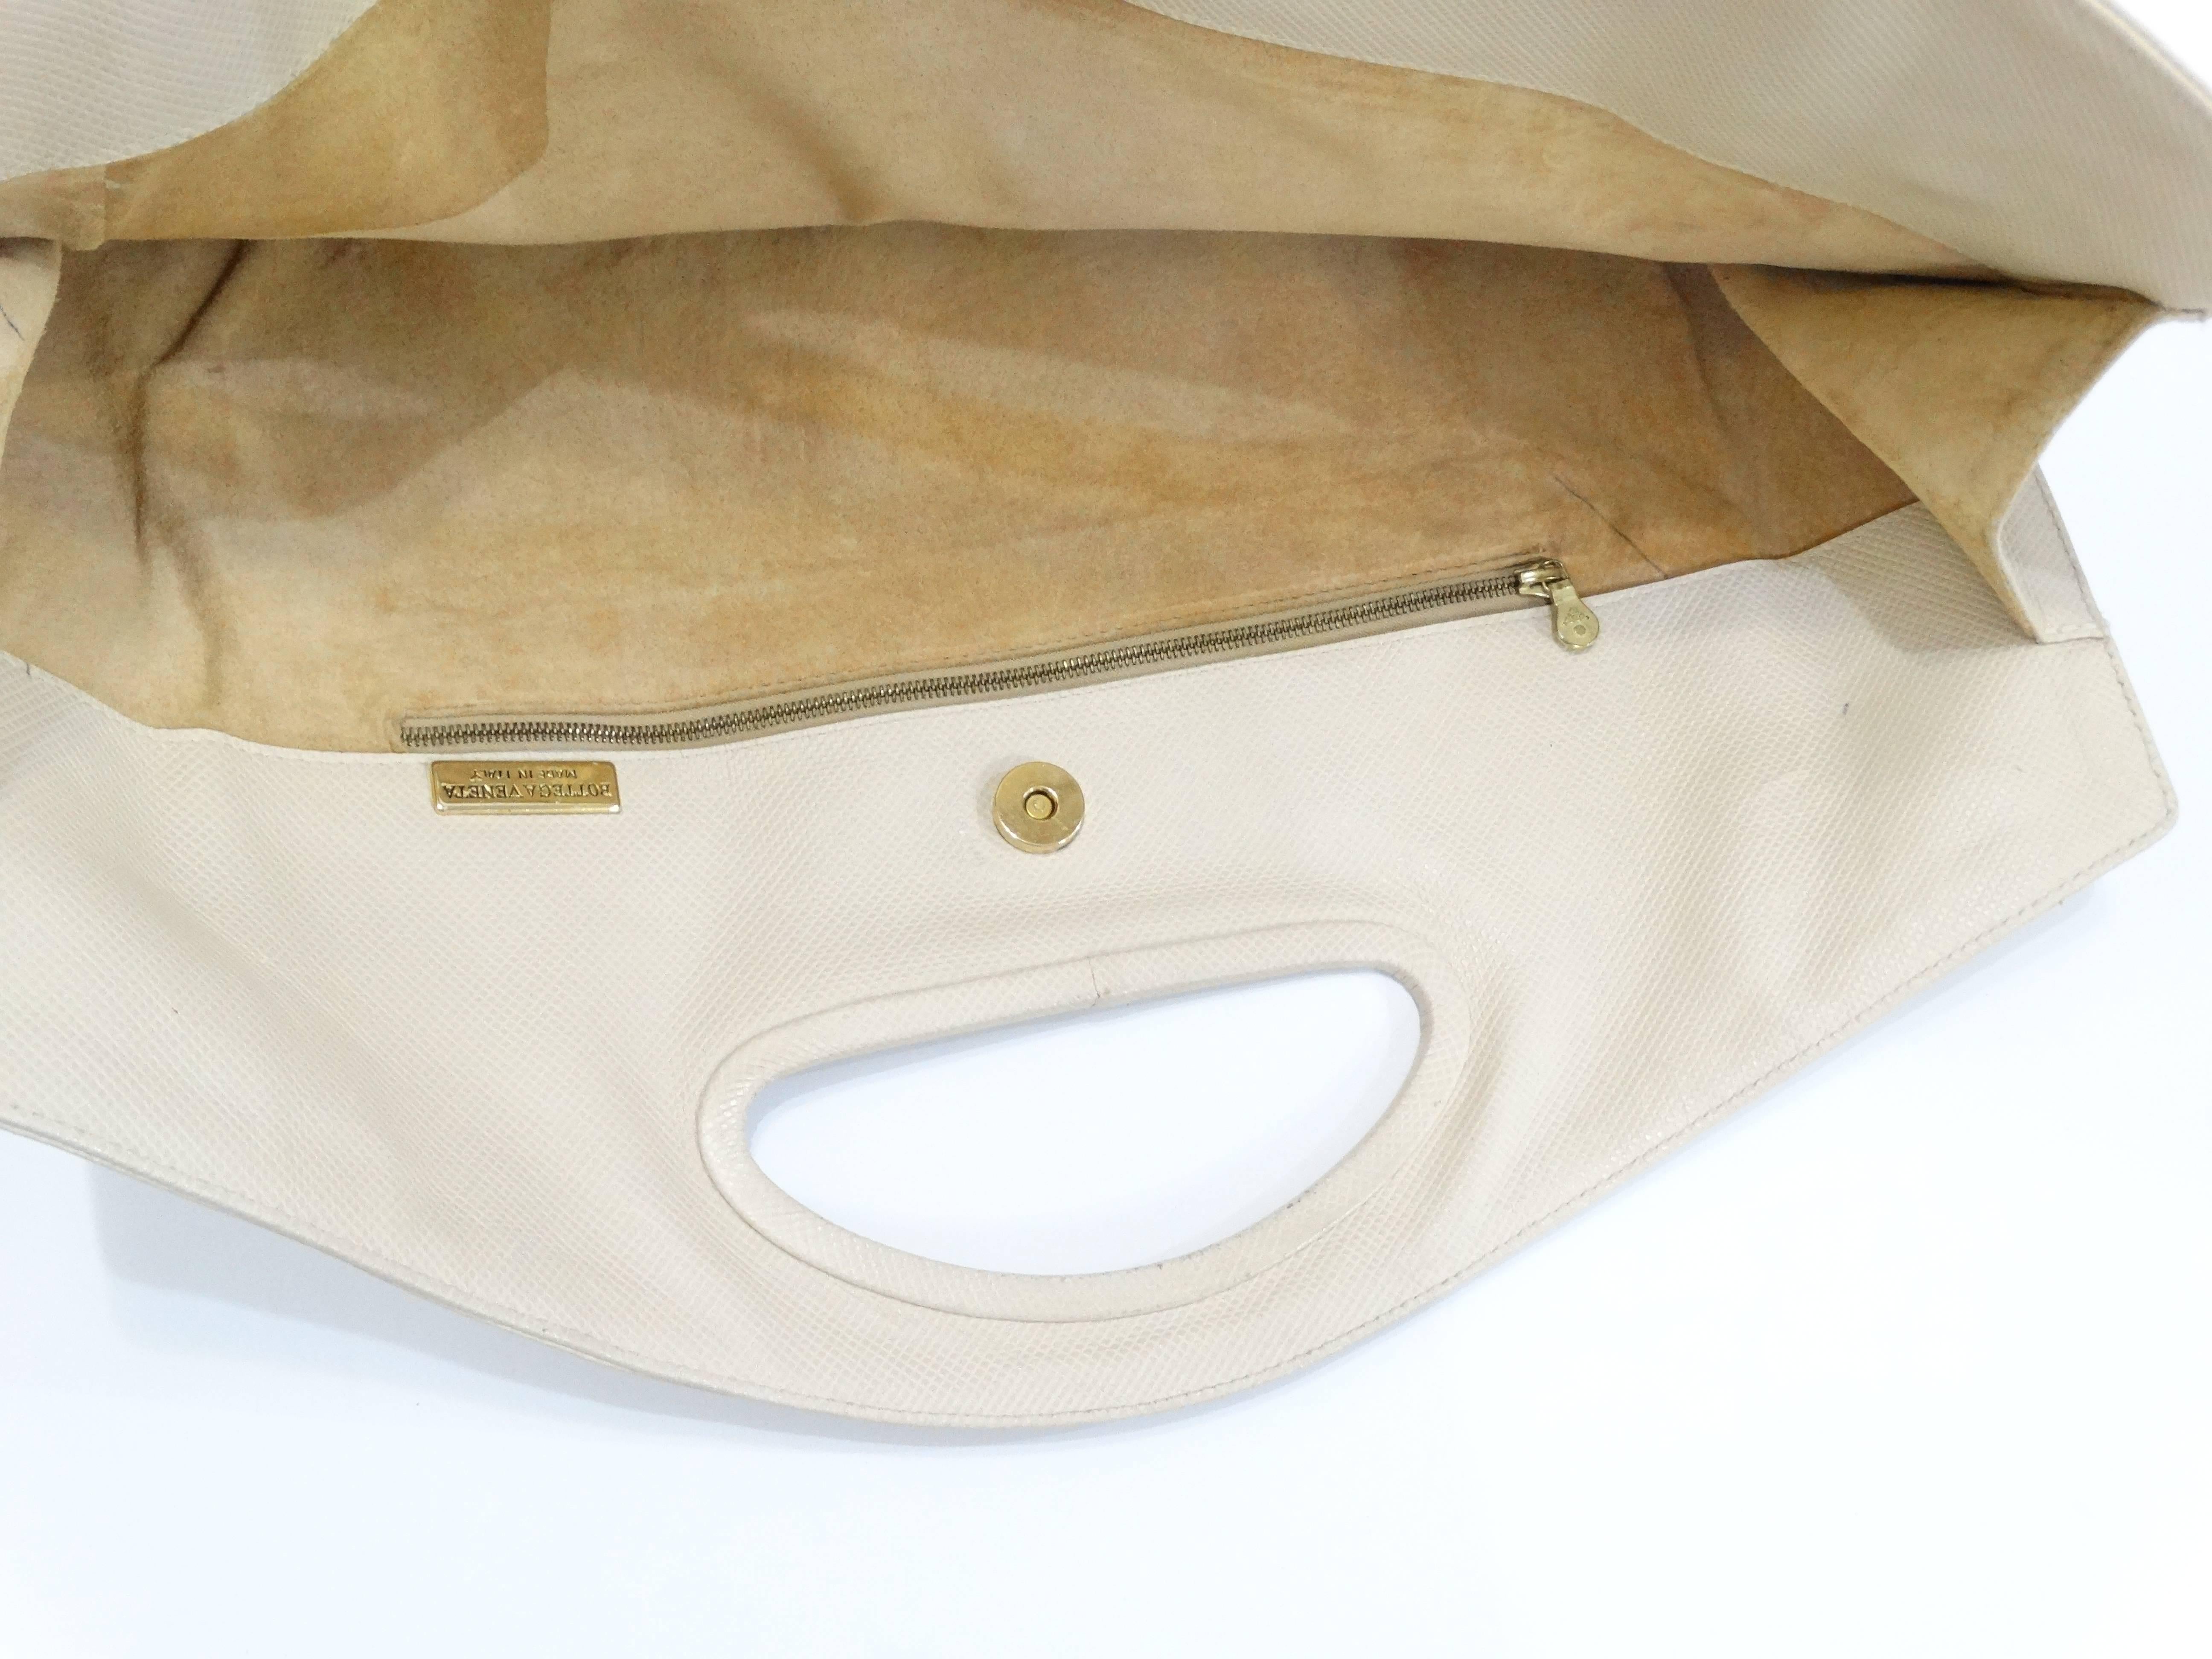 Diese Tasche von Bottega Veneta ist aus weichem, cremefarbenem Leder gefertigt. Einzigartige rechteckige Silhouette - leicht überdimensioniert. Strukturierter Griff oben und Magnetverschluss. Suede Innenraum mit Reißverschluss Tasche- einige der